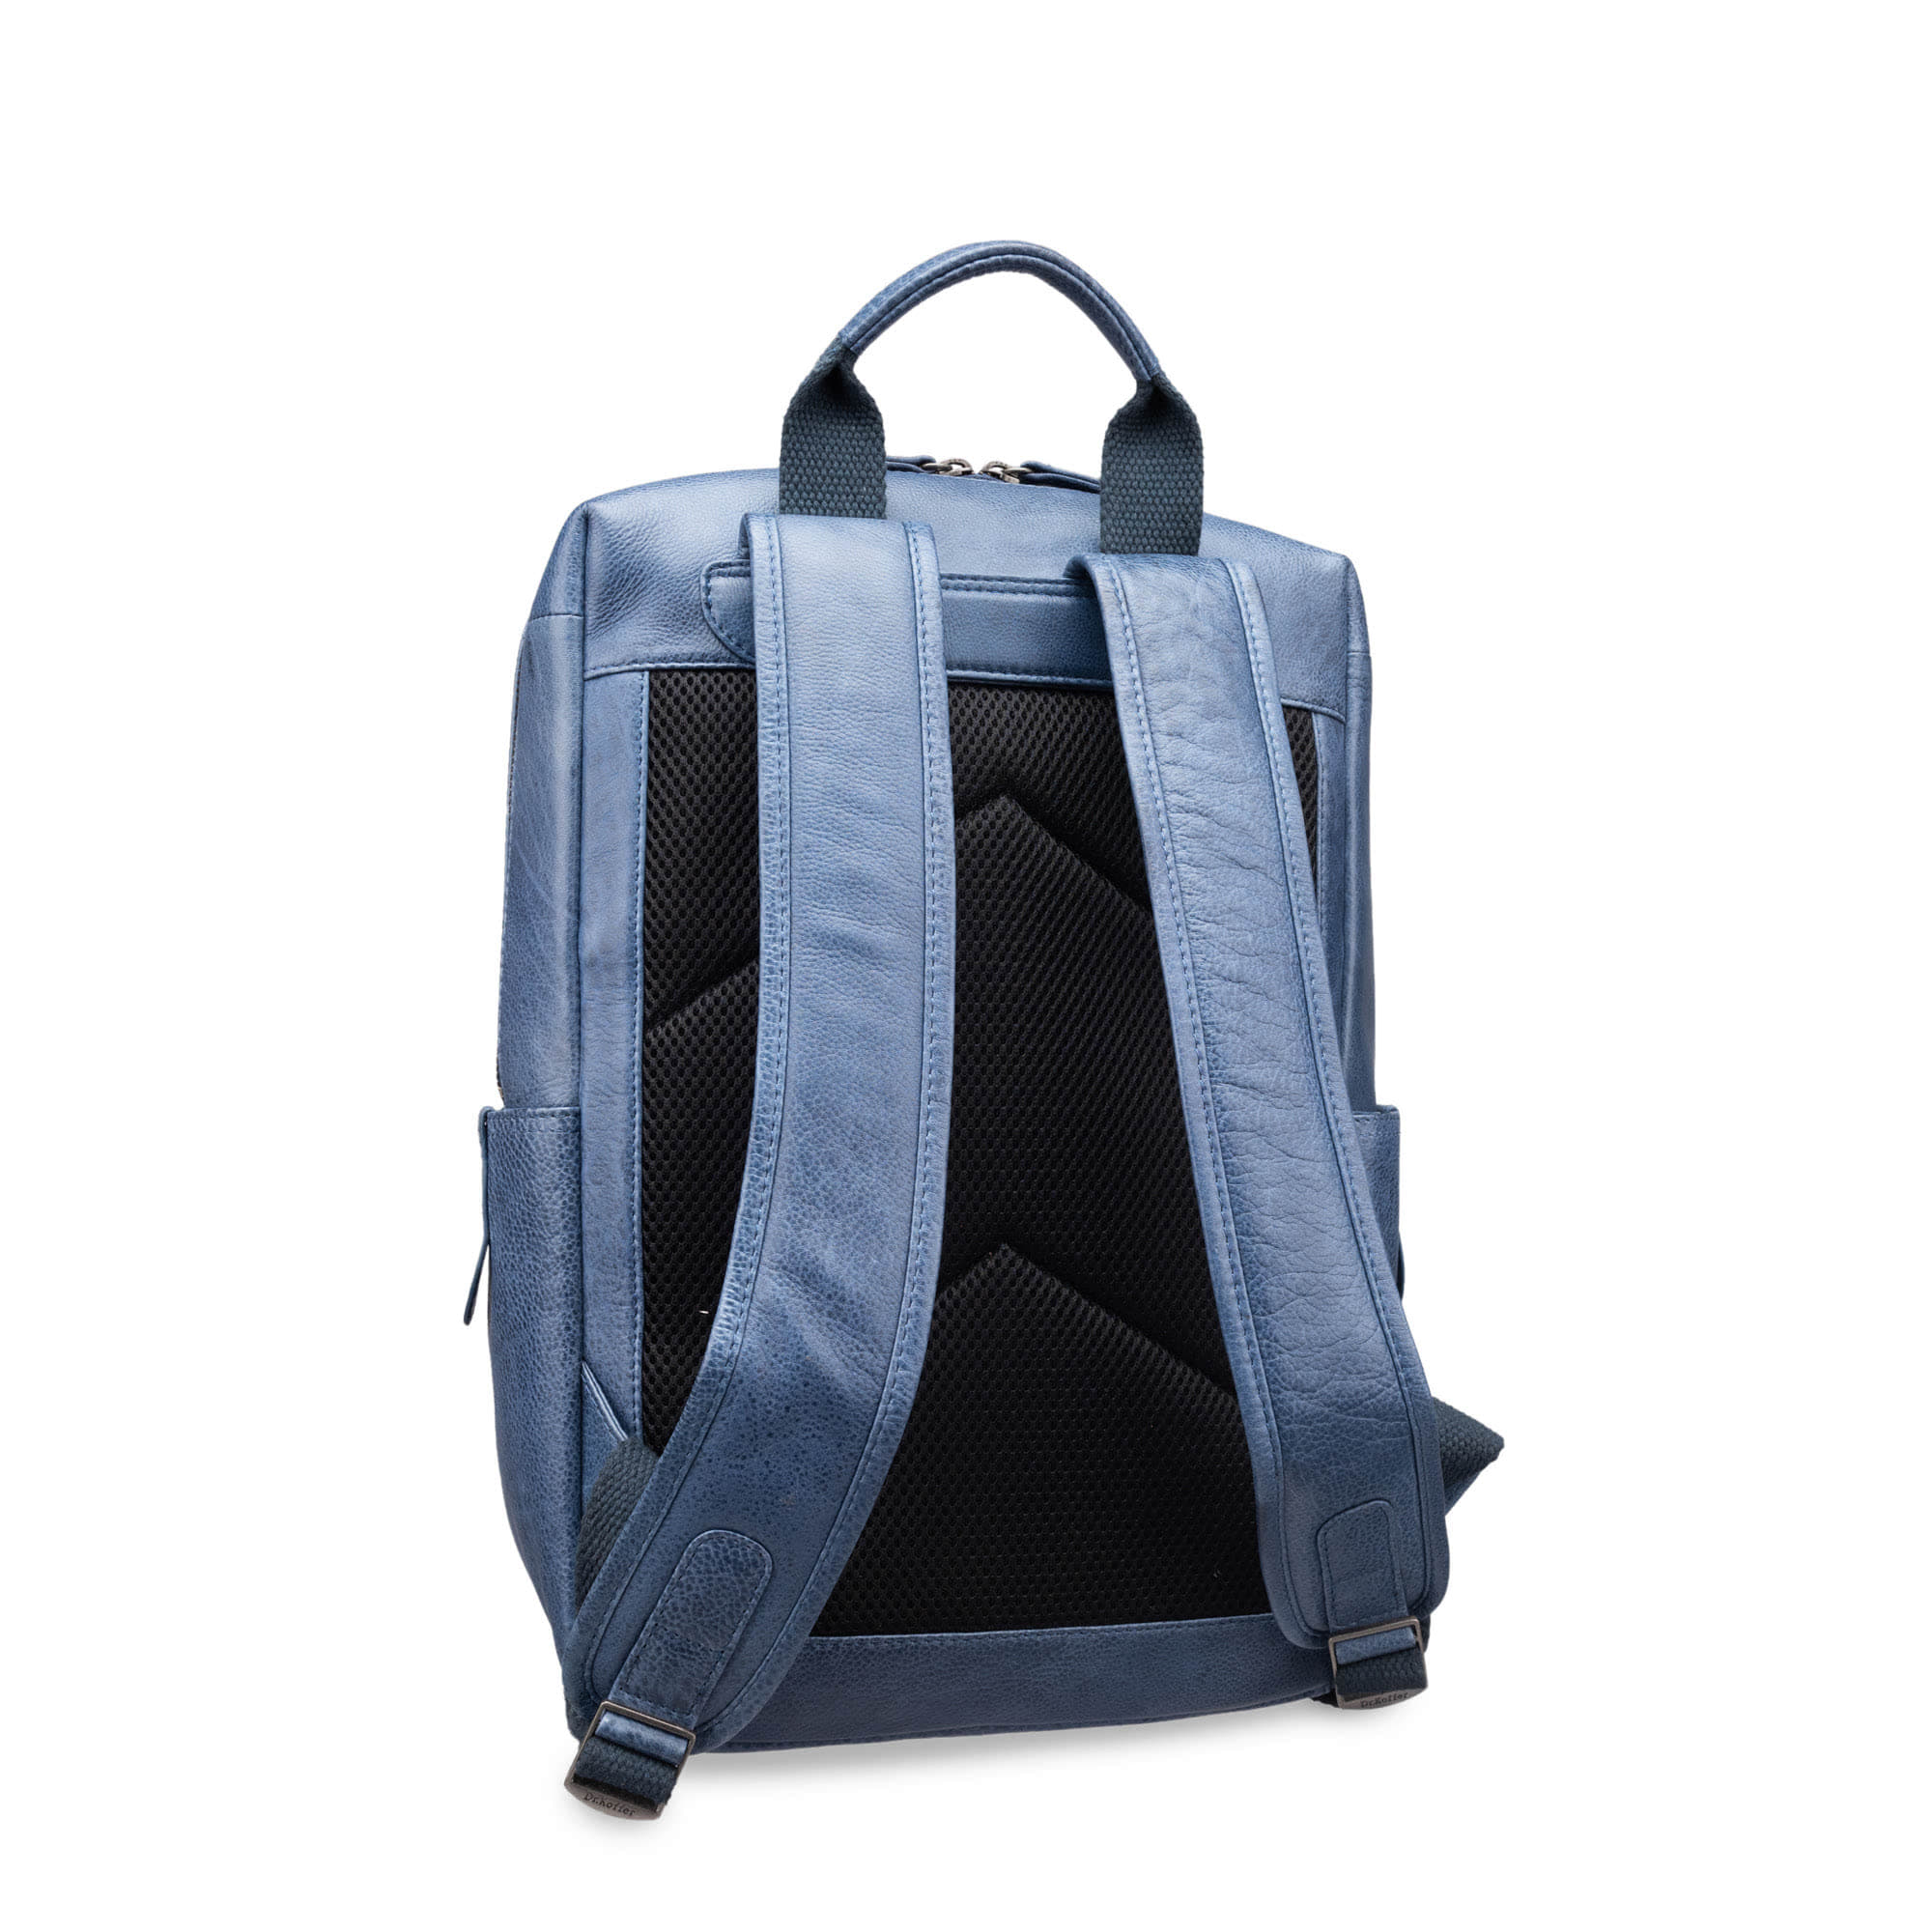 Др.Коффер B402691-154-60 рюкзак, цвет синий - фото 3